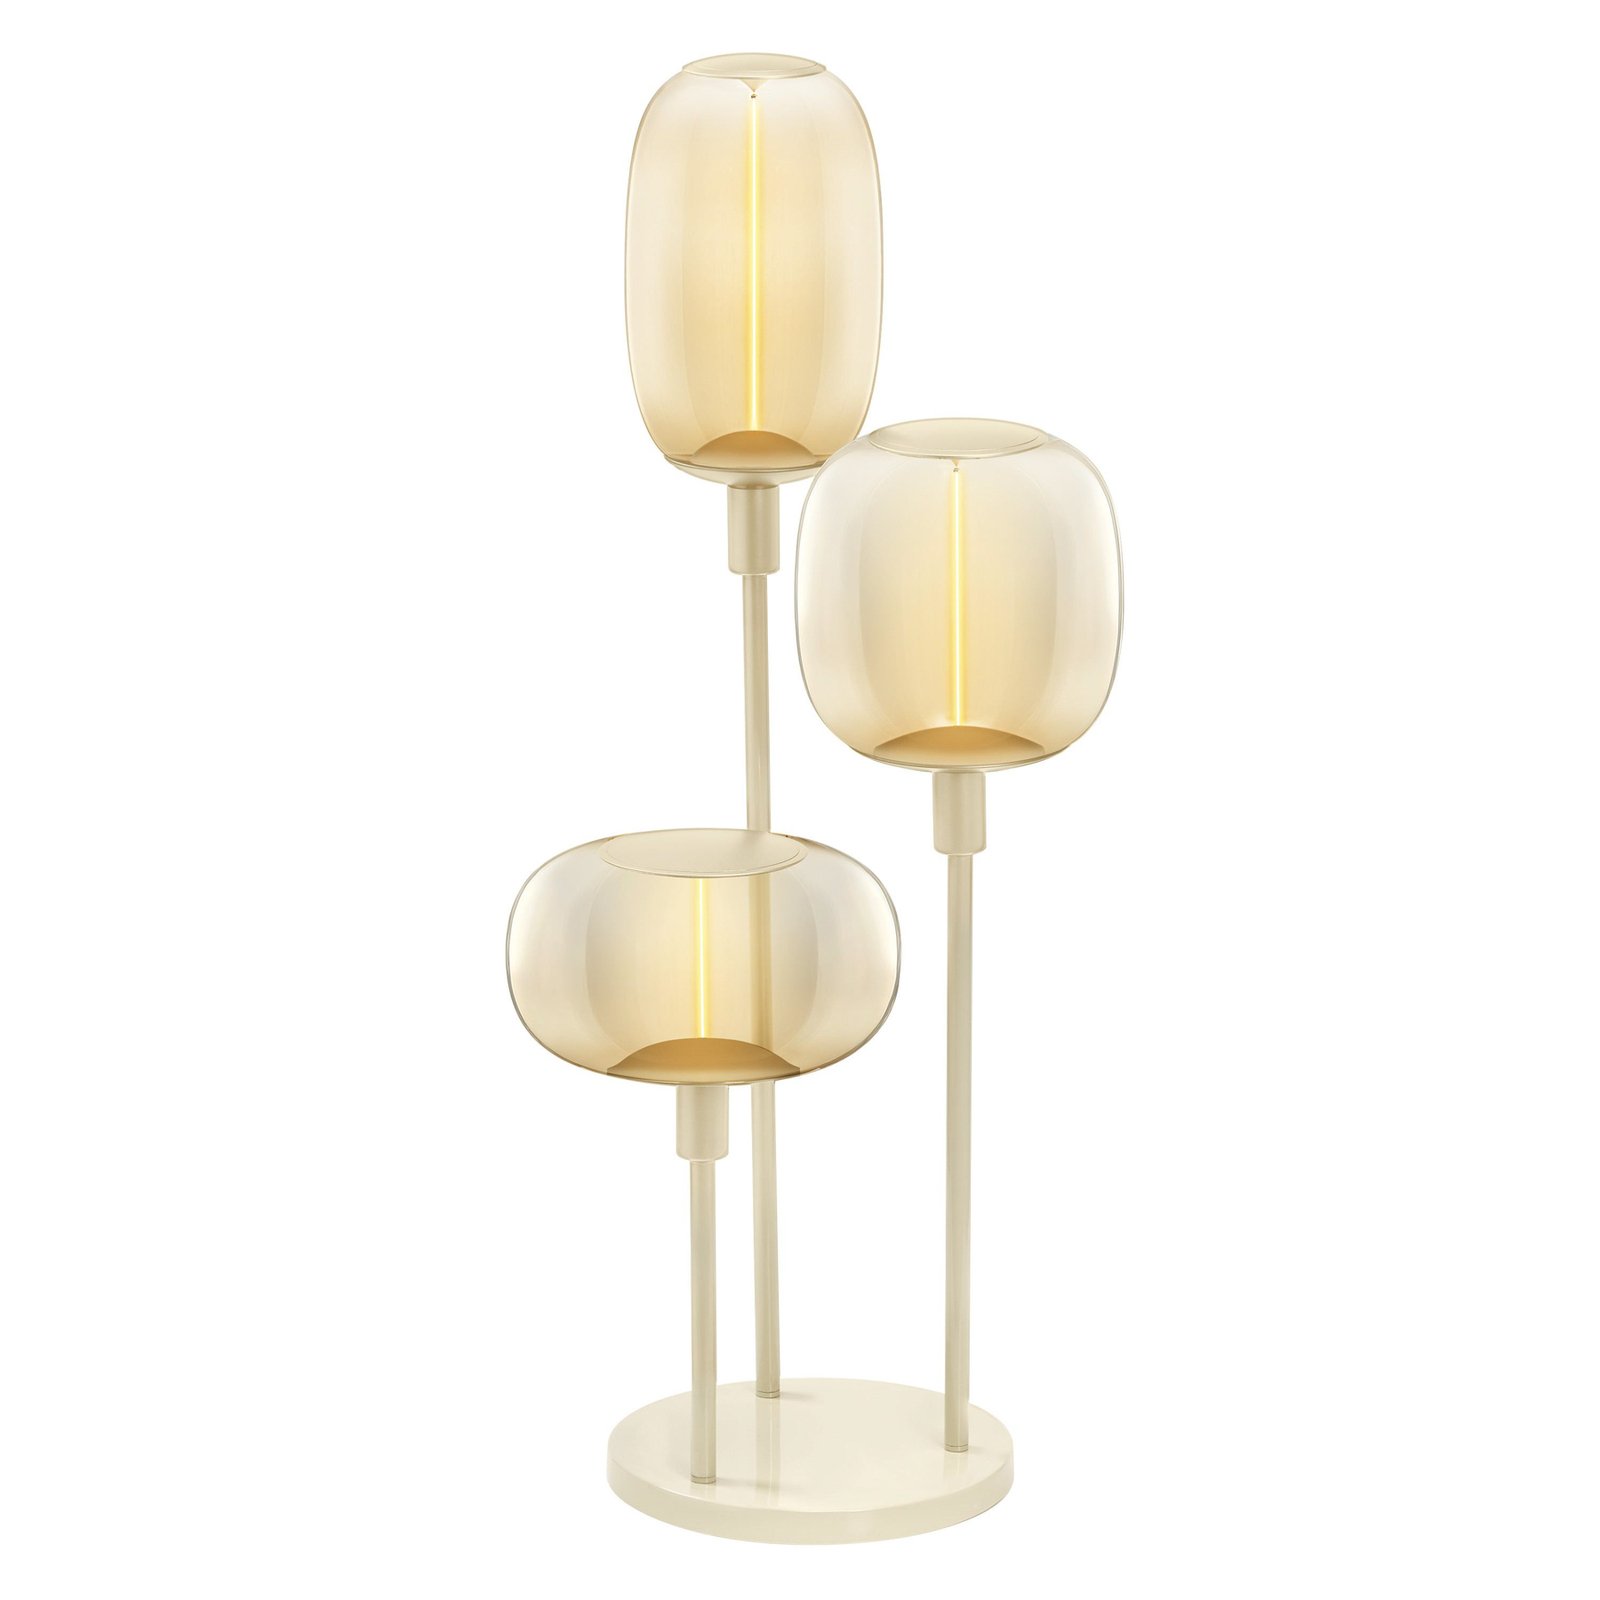 LEDVANCE vloerlamp Decor Stick 3-lamps. Hoogte 78cm, beige